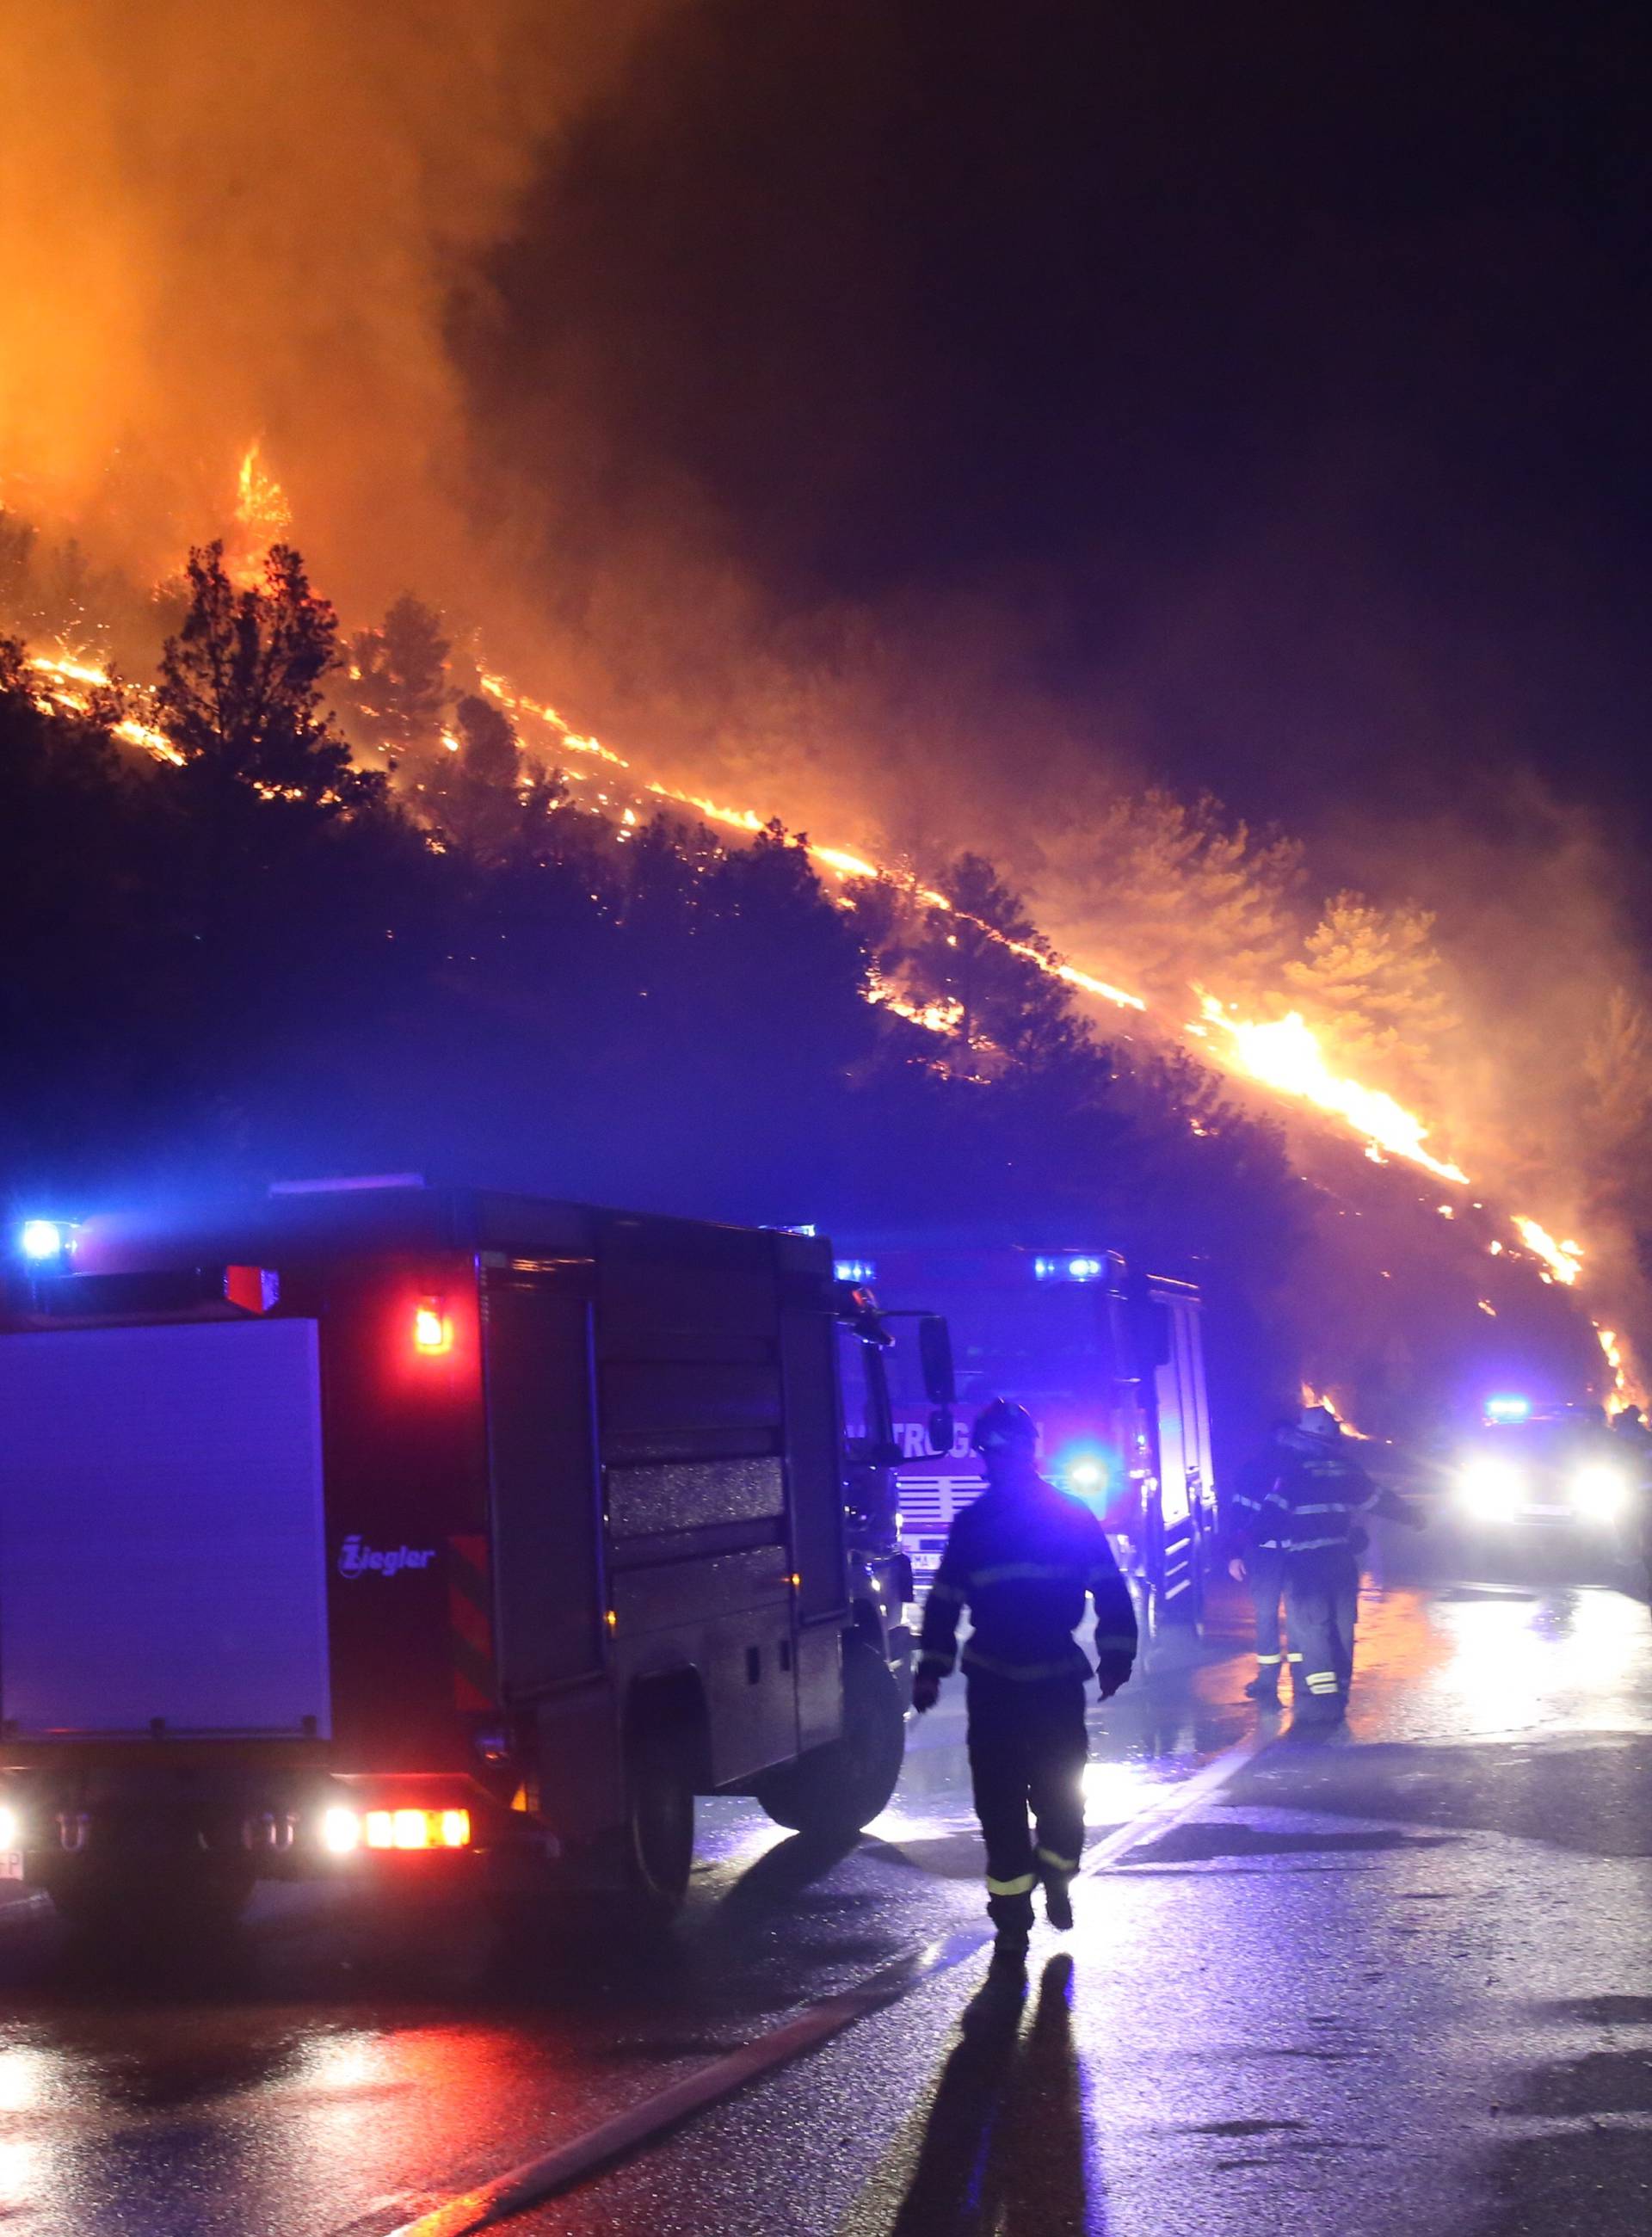 Upozorenje: Požari poput onog u Splitu lako se mogu ponoviti